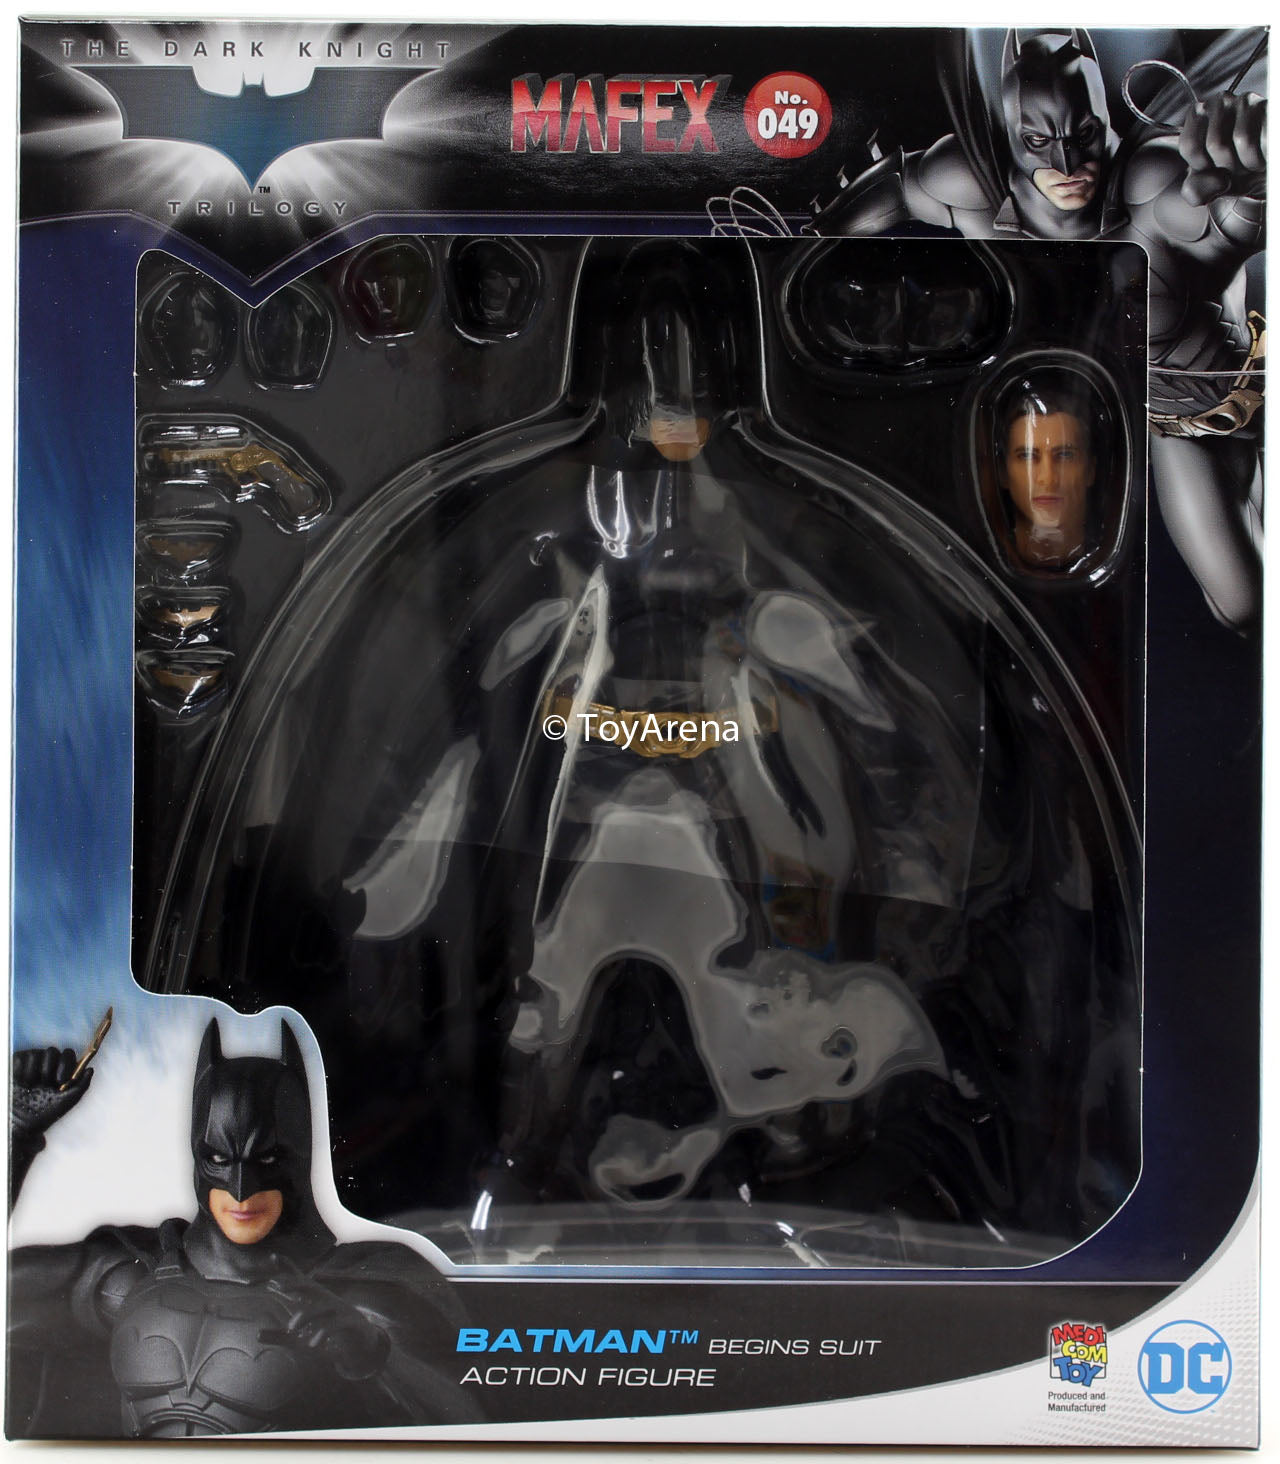 Mafex No. 049 Batman Begins Batman Action Figure Medicom